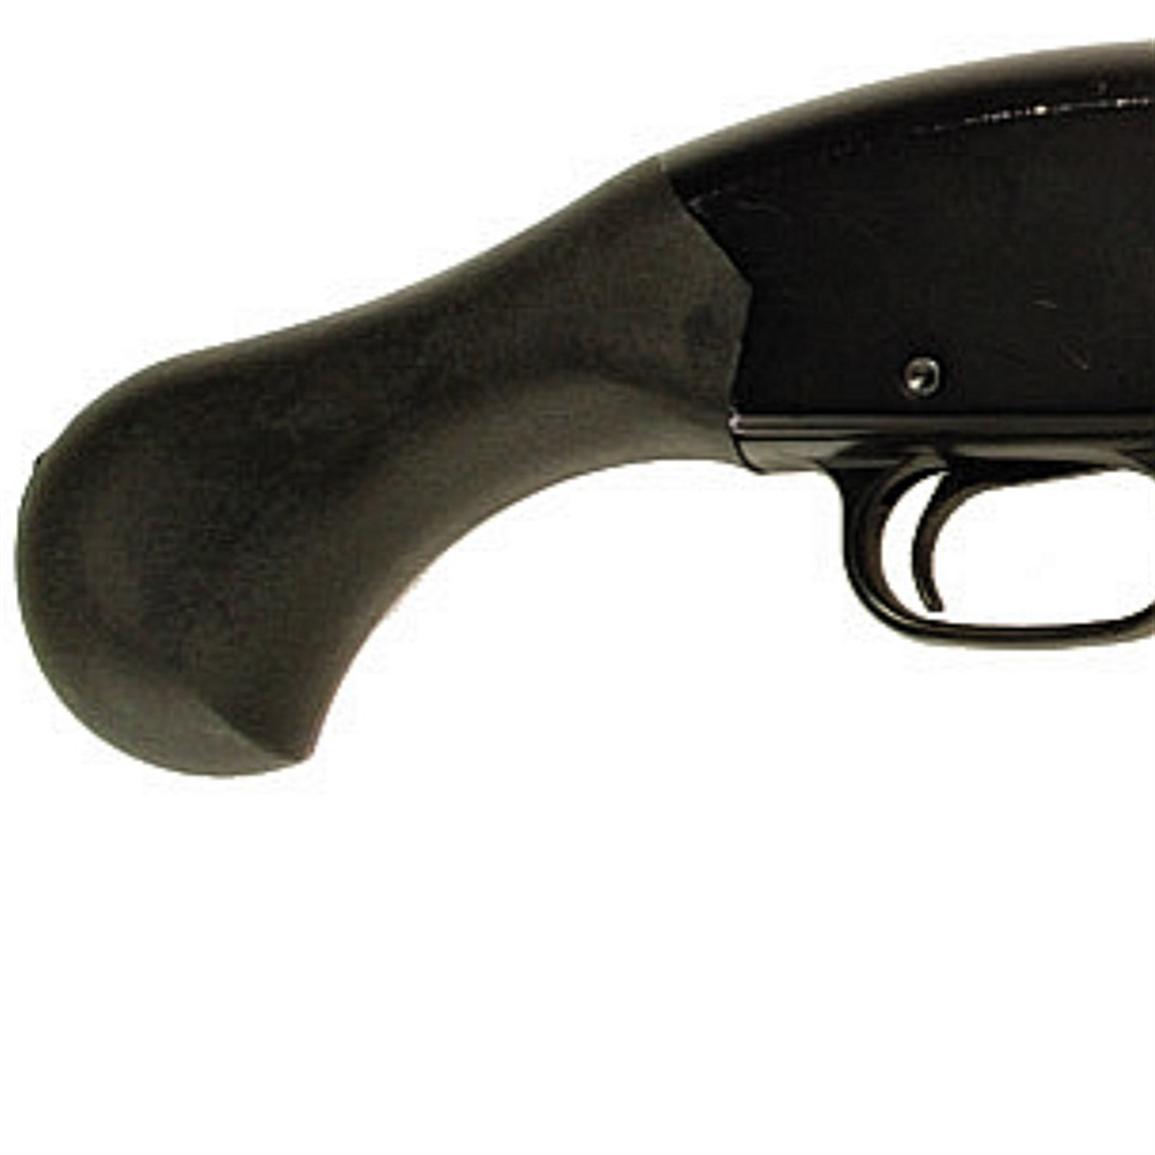 Speedfeed Pistol Grip Stock Set For Mossberg 500 590 12 Gauge